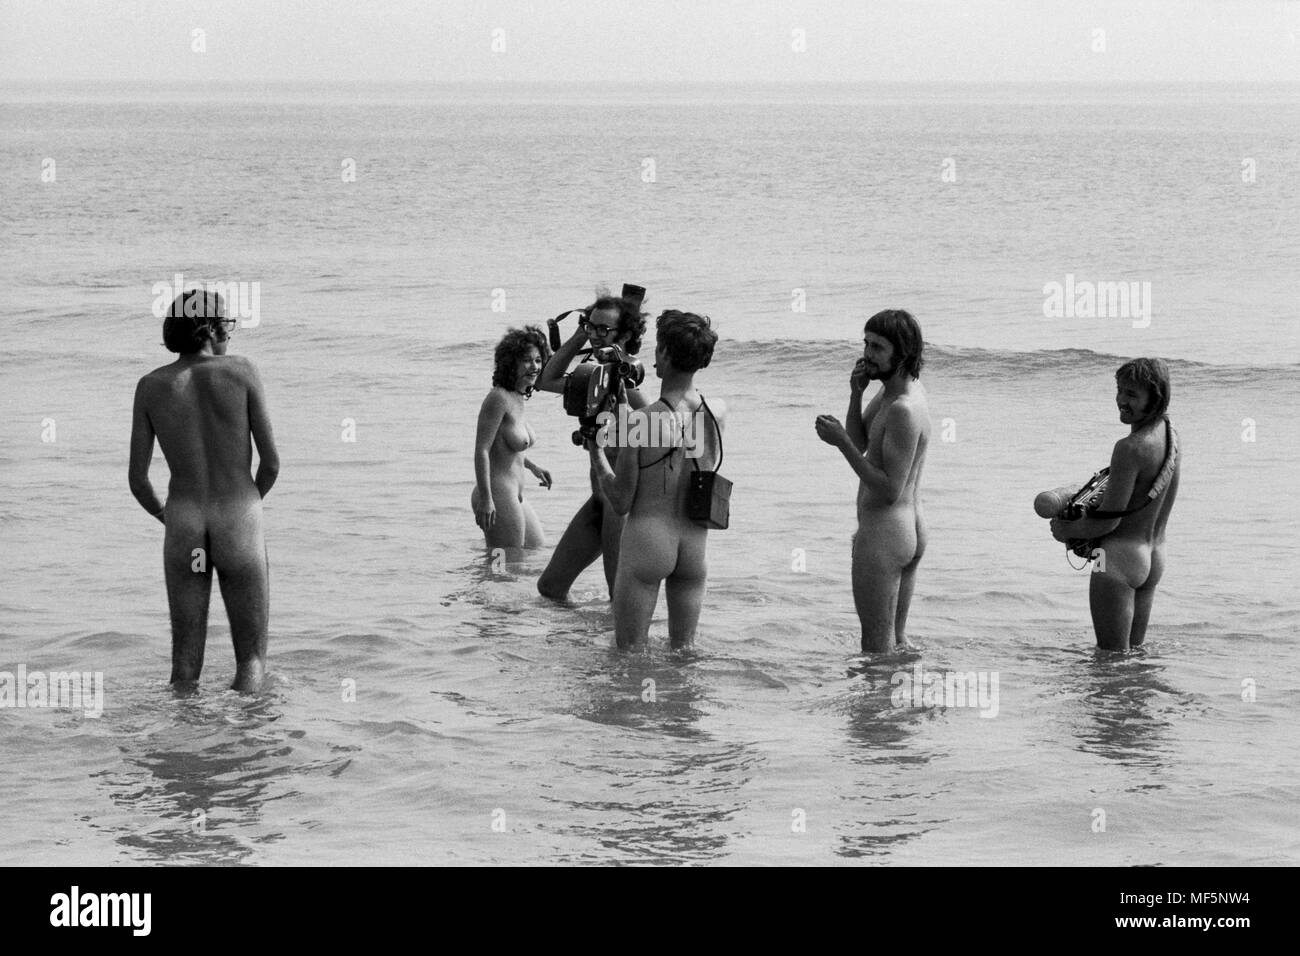 Ein TV-Team an der 1970 Isle of Wight Pop Festival, Filmen Hippies nackt baden im Süßwasser Bucht für eine News. Hippy Wachen waren angewiesen, alle Mitglieder der Presse, die Zugang zu den Bay nackt ausziehen, sich vor dem Filmen oder Fotografieren, die tapfersten Mitglieder der Medien vergnügt haben. Stockfoto